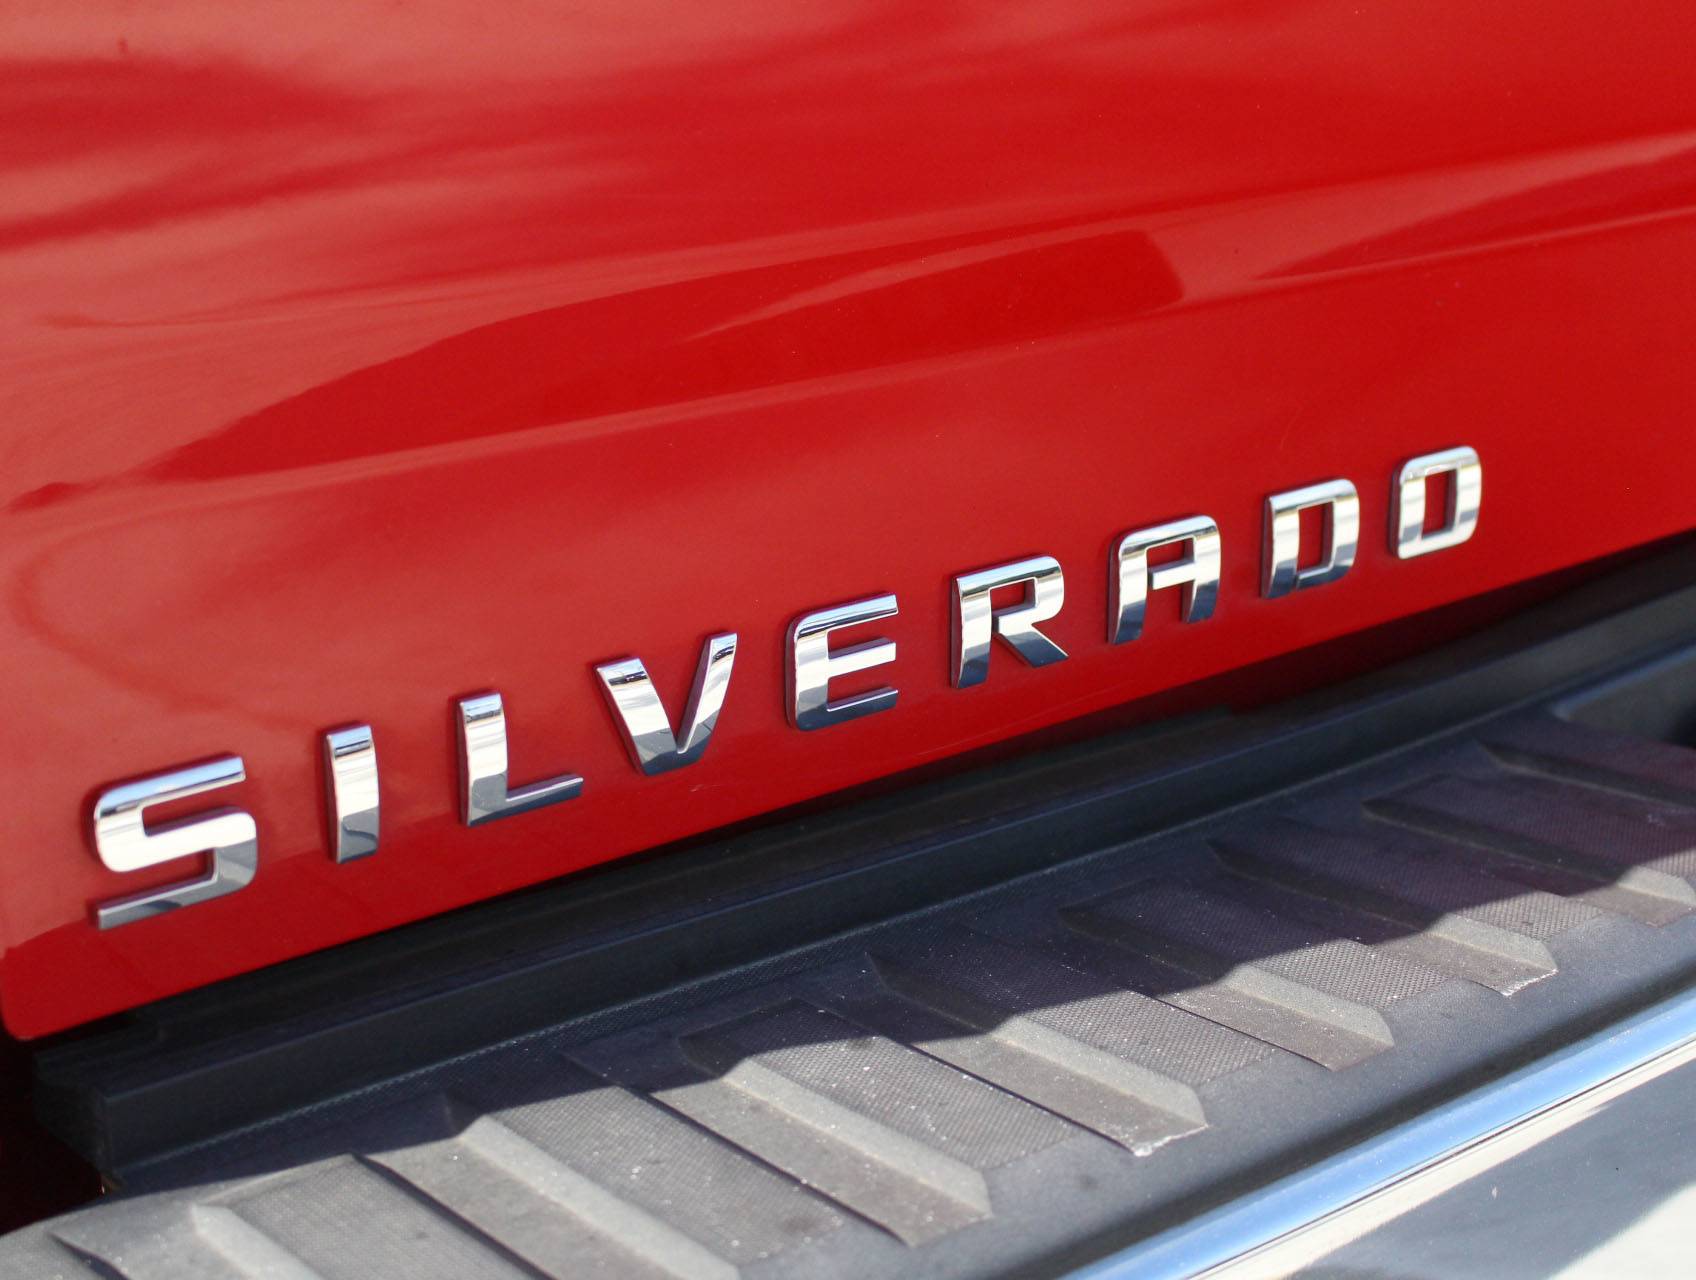 Florida Fine Cars - Used CHEVROLET SILVERADO 2015 MIAMI LT